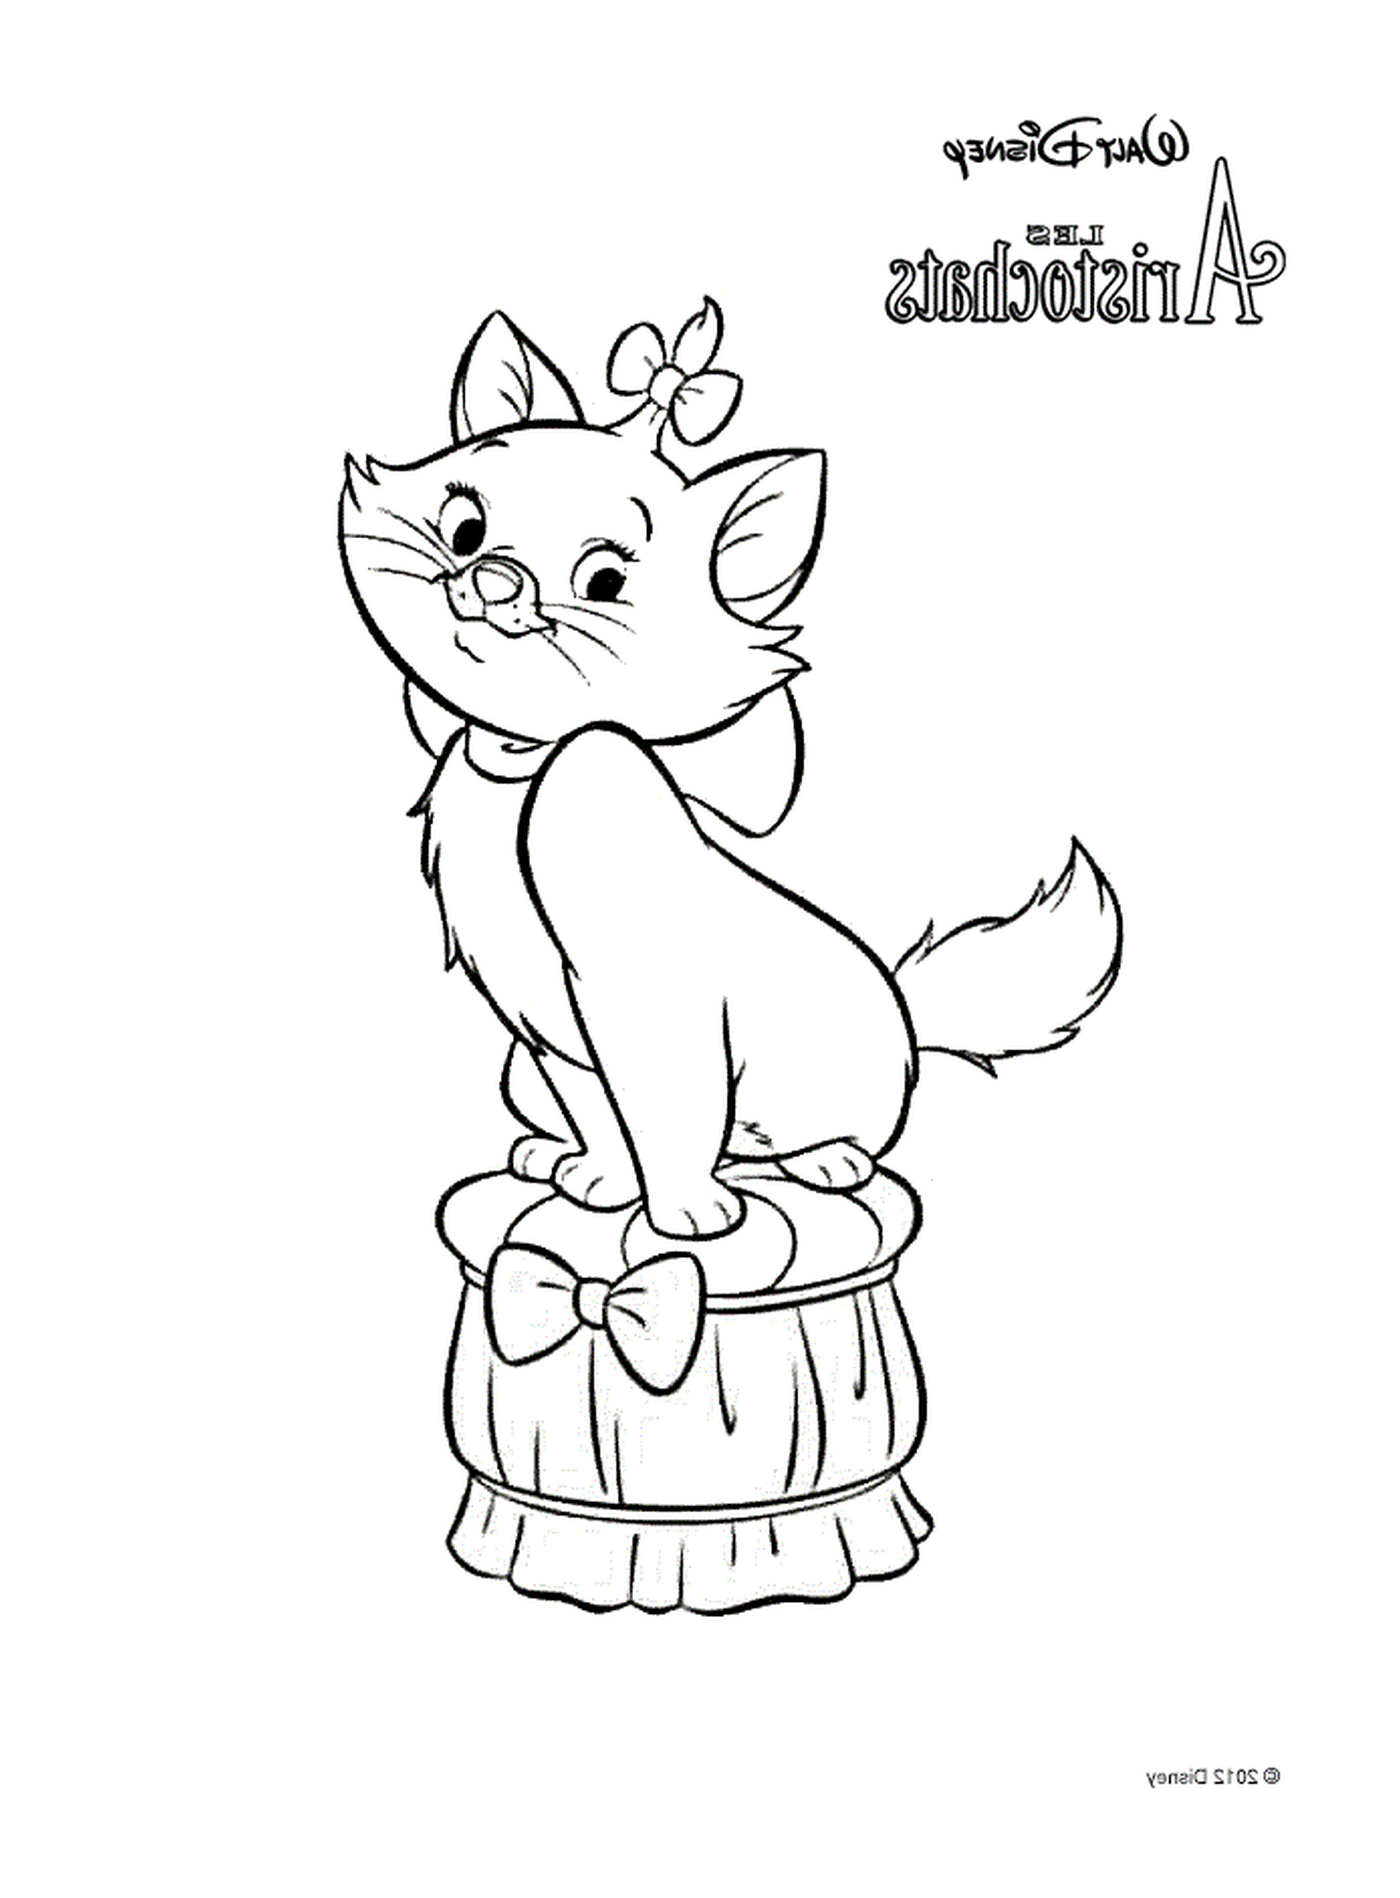  Marie, o gato dos Aristófatas da Disney, sentado em um barril 